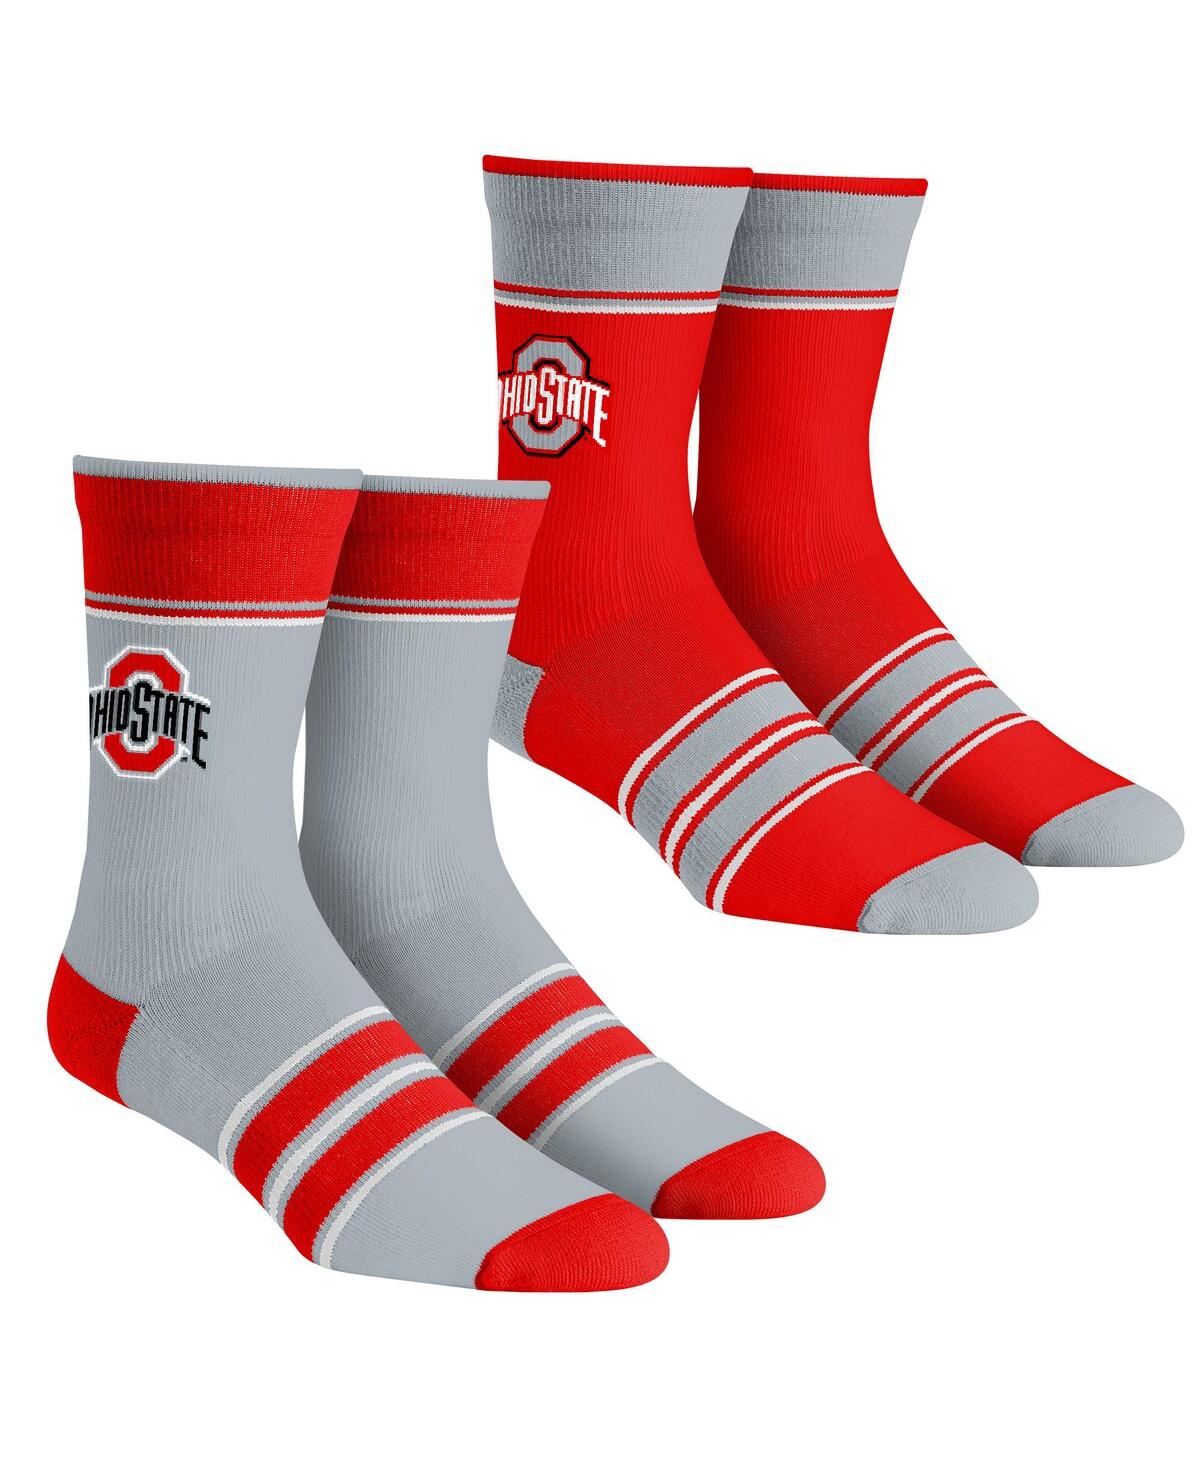 Rock 'em Men's And Women's  Socks Ohio State Buckeyes Multi-stripe 2-pack Team Crew Sock Set